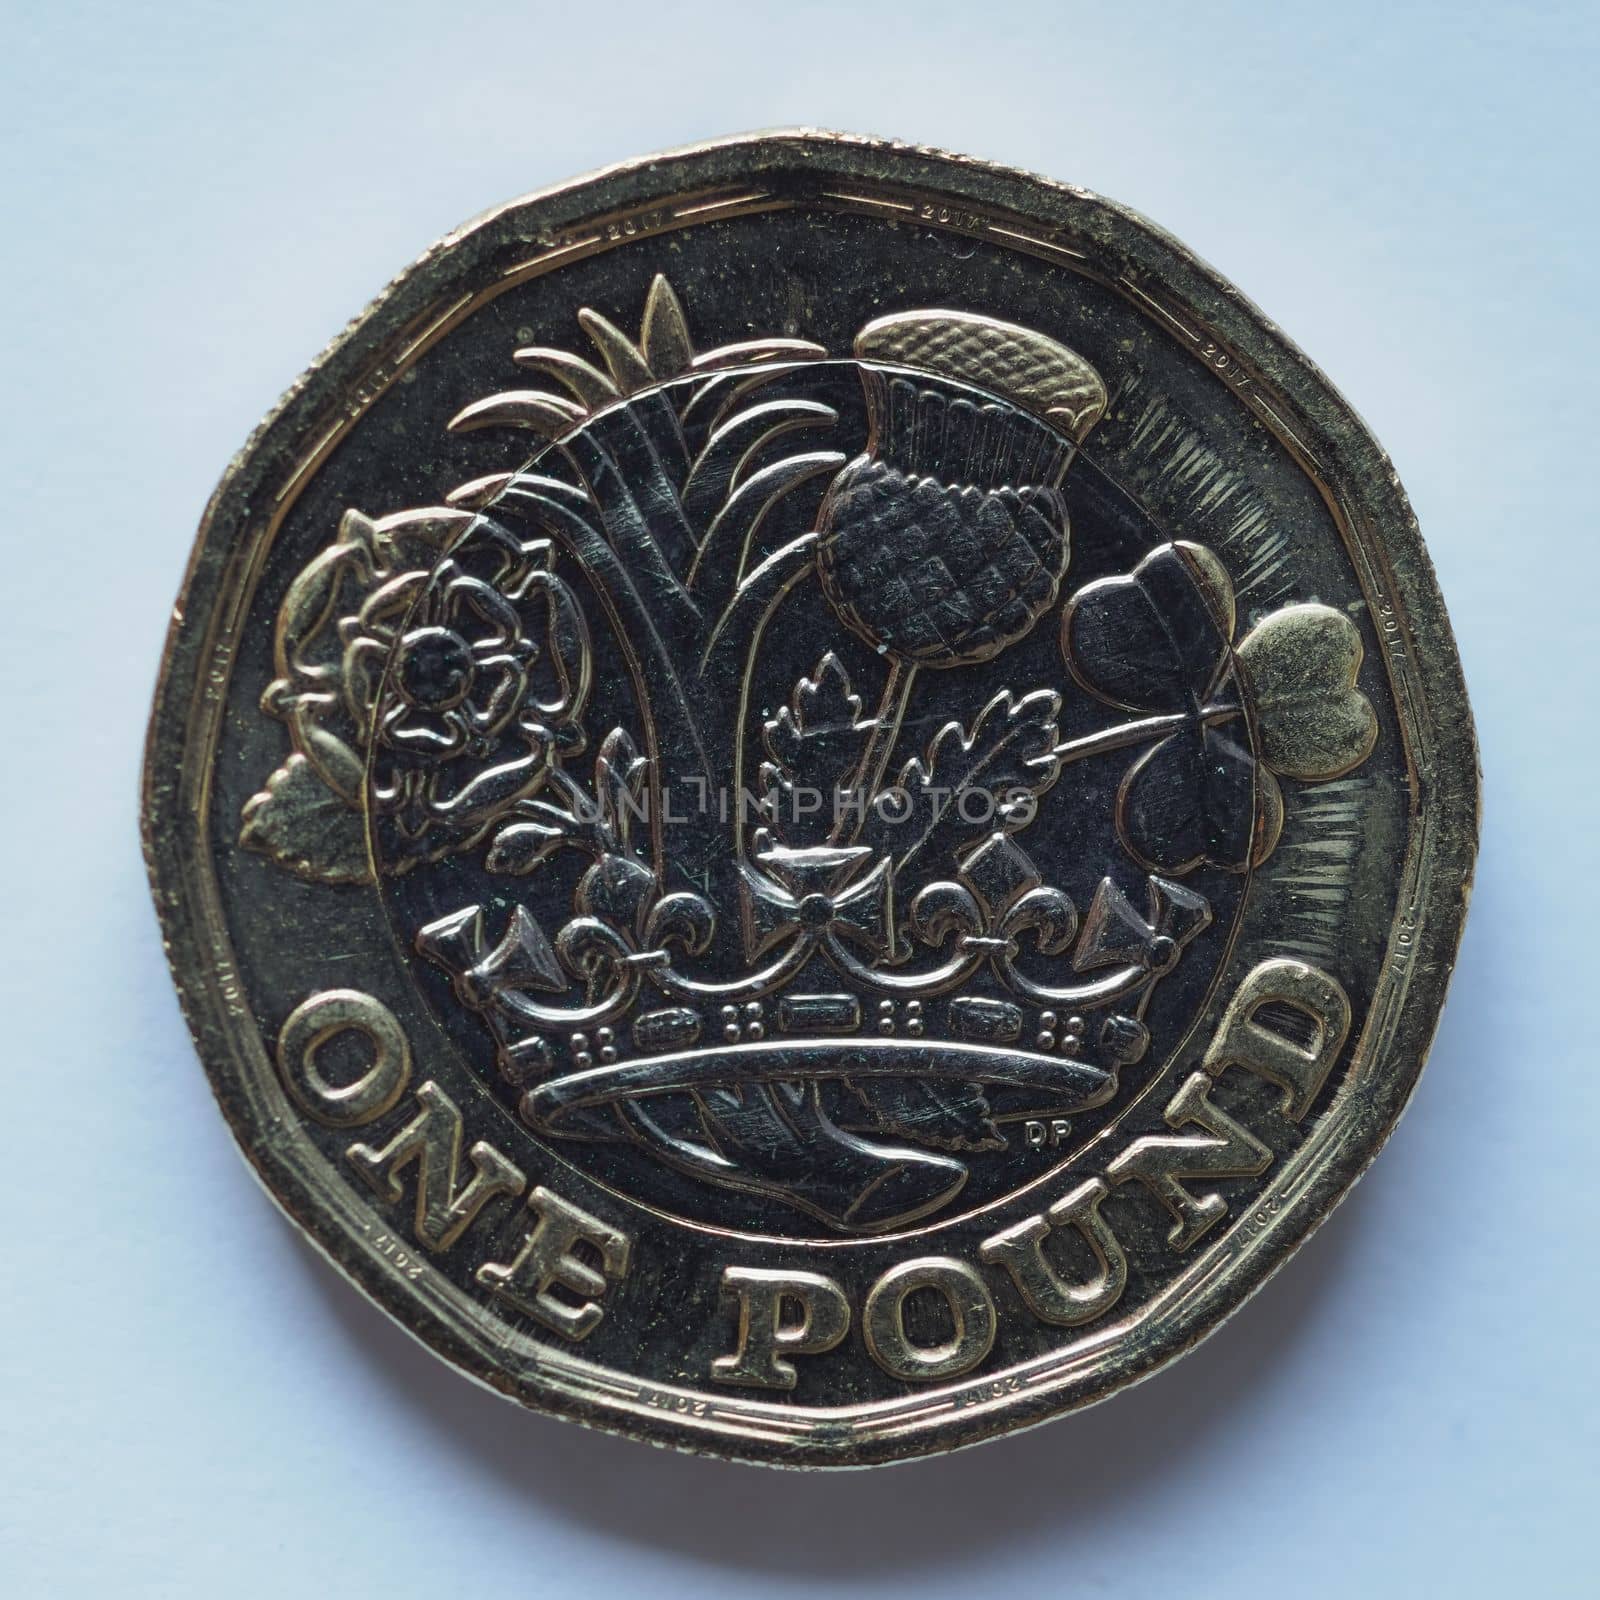 1 pound coin, United Kingdom by claudiodivizia